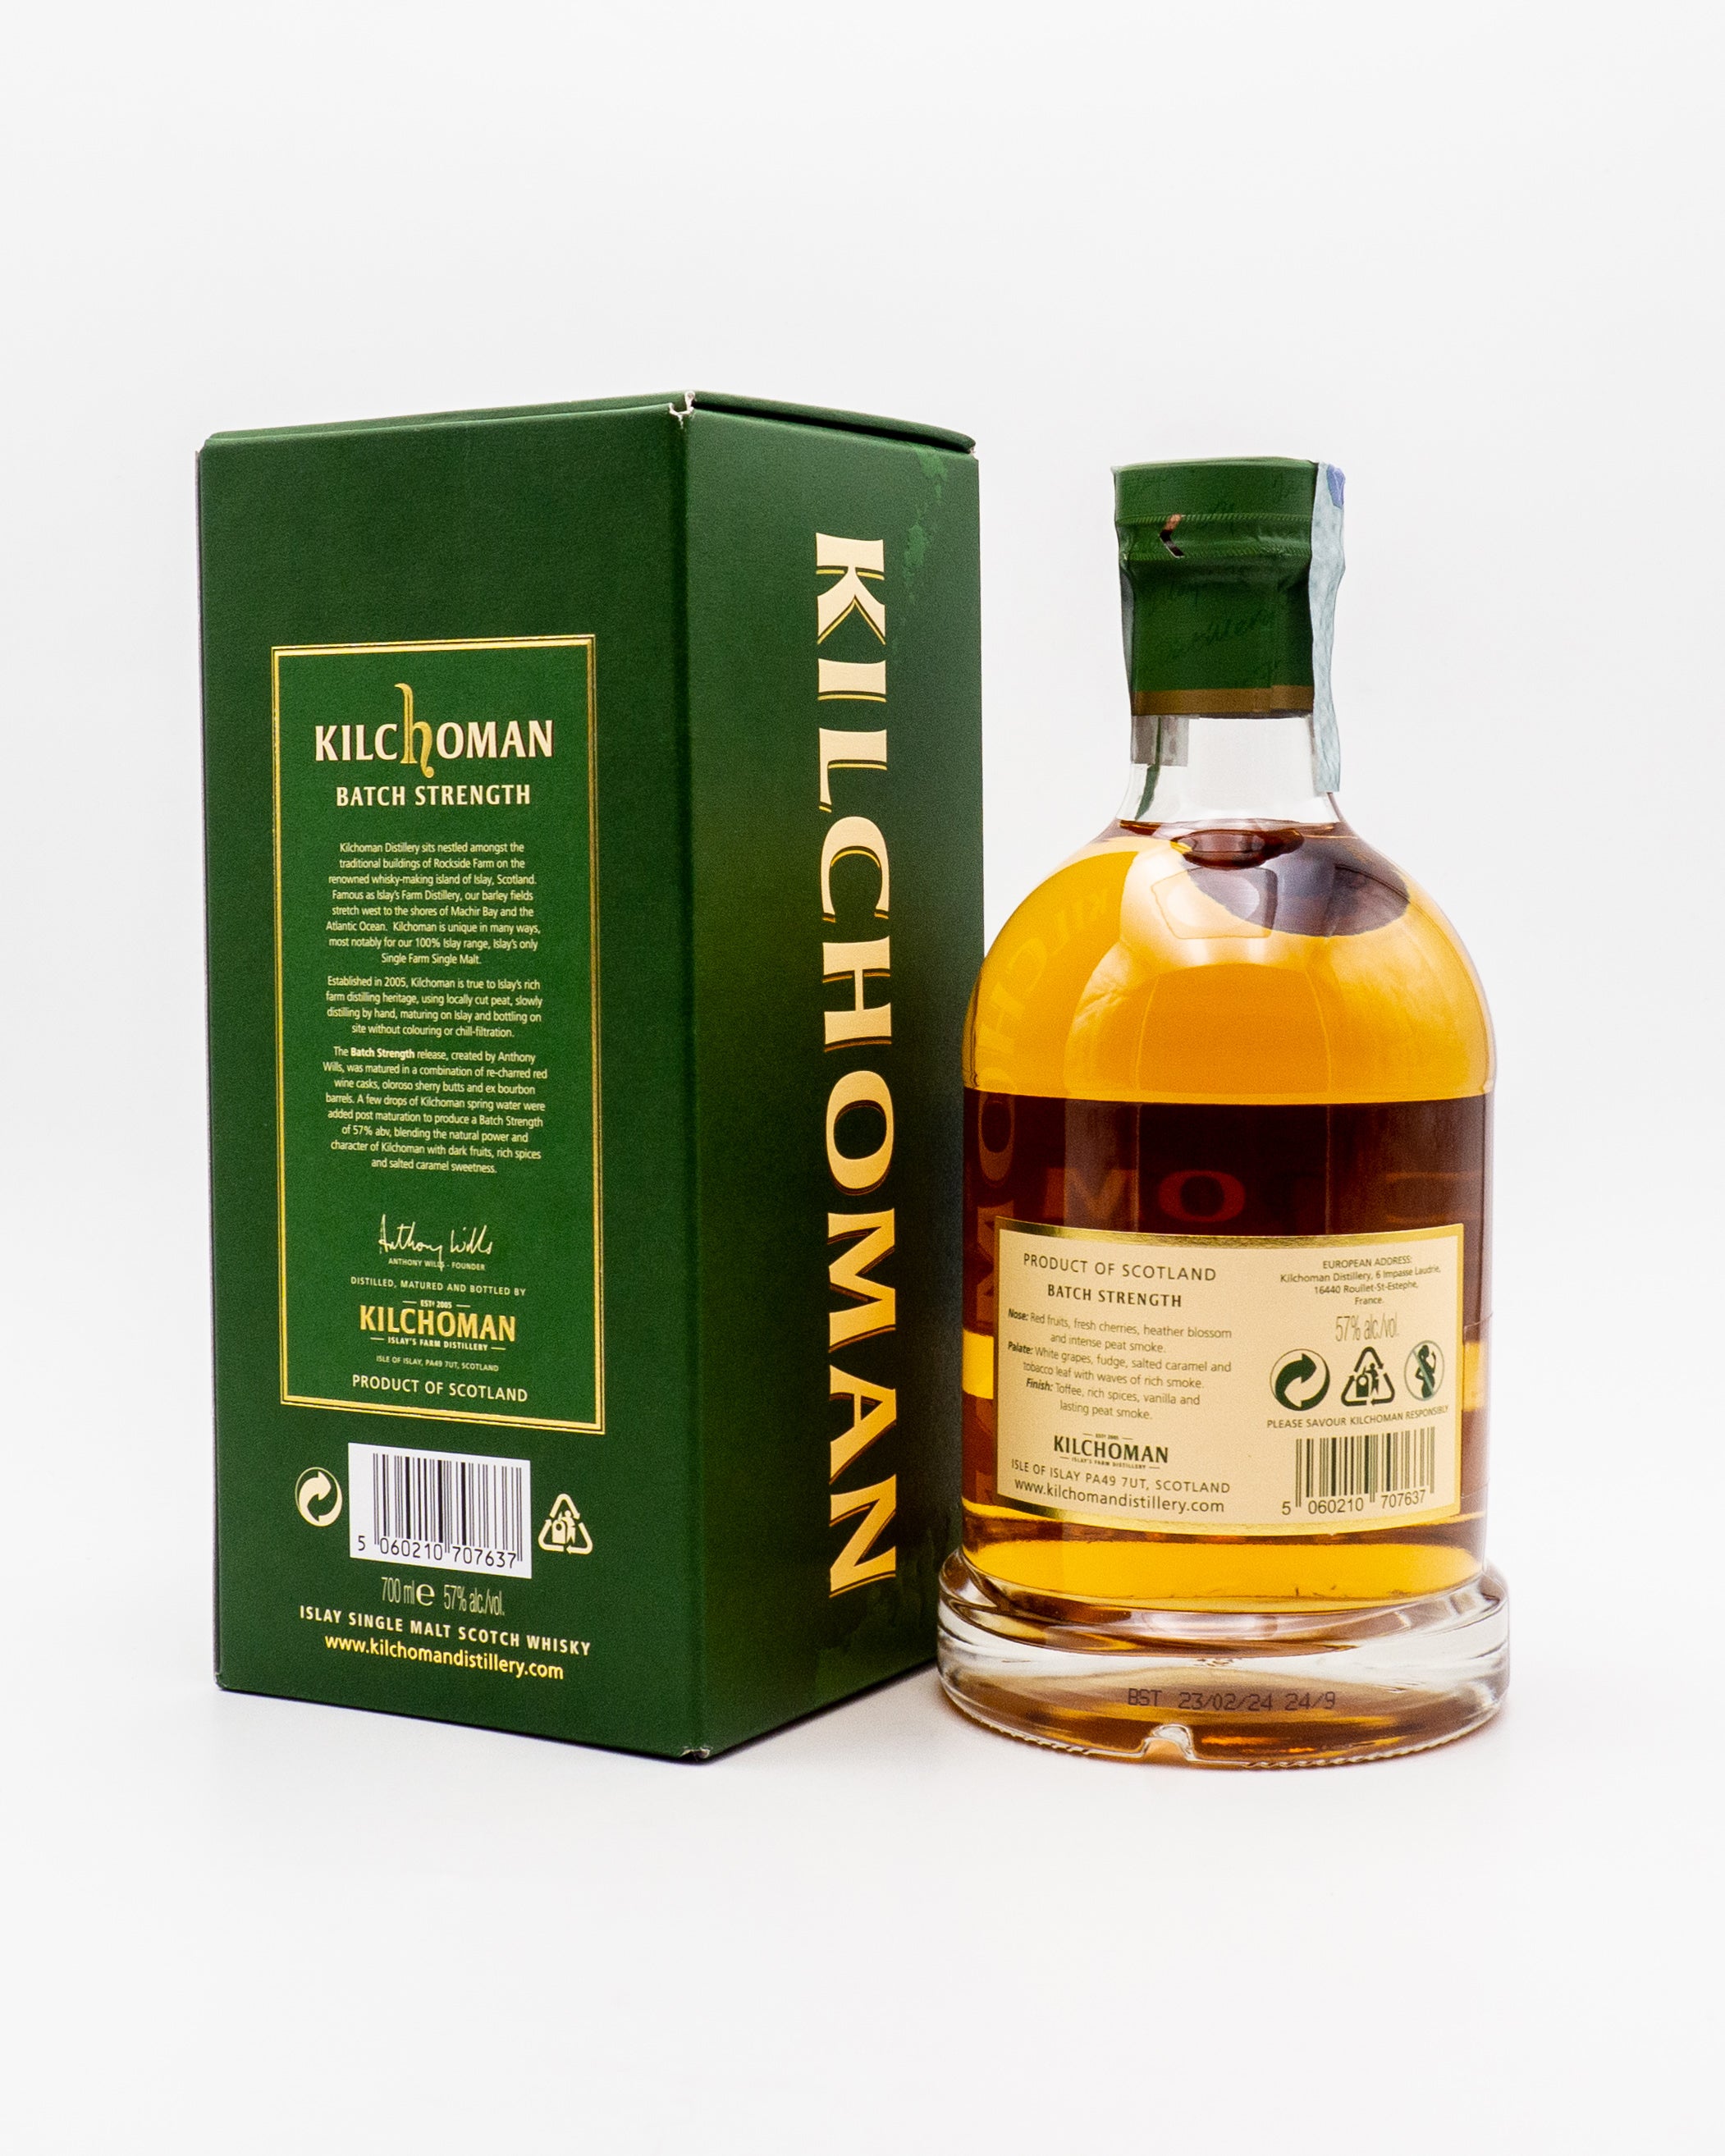 Whisky Kilchoman Batch Strength Tour Edition - Kilchoman